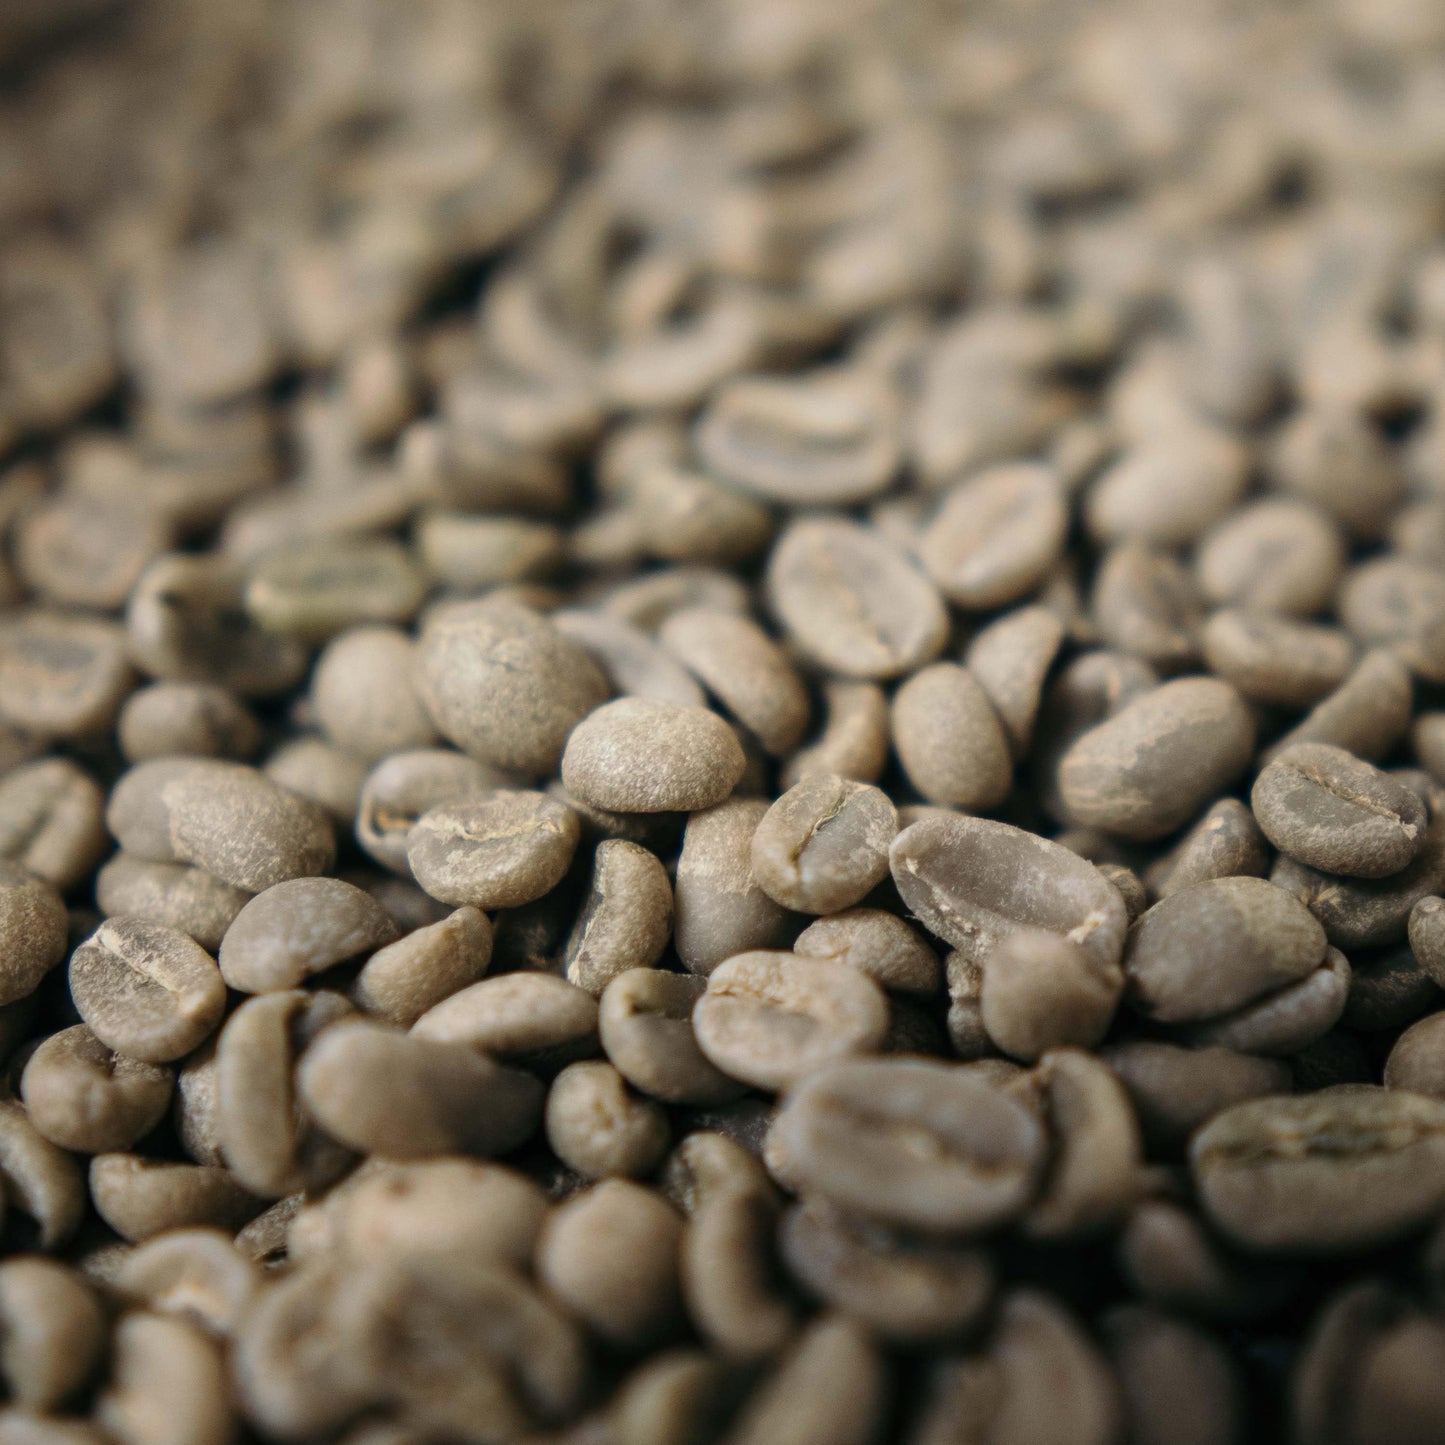 Colombia Narino Excelso - Rå, gröna kaffebönor